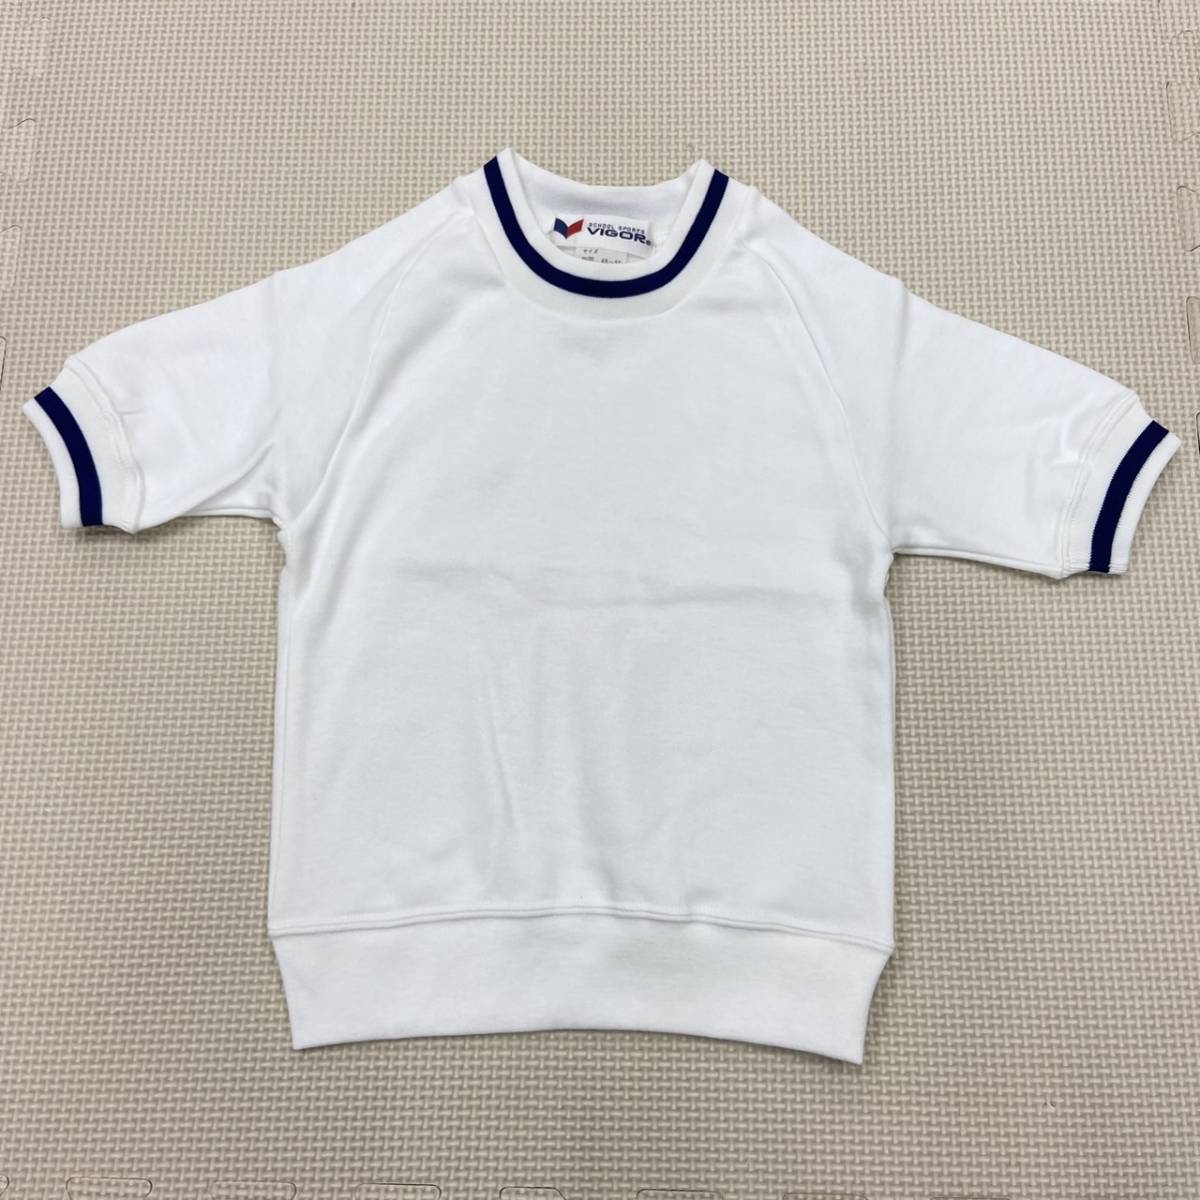 (M)058 новый товар [ VIGOR ]b.ga- тренировка рубашка размер 100 2 листов комплект / короткий рукав / круг воротник /la gran / ребенок /../ детский / спортивная форма / спортивная форма / движение надеты / сделано в Японии 